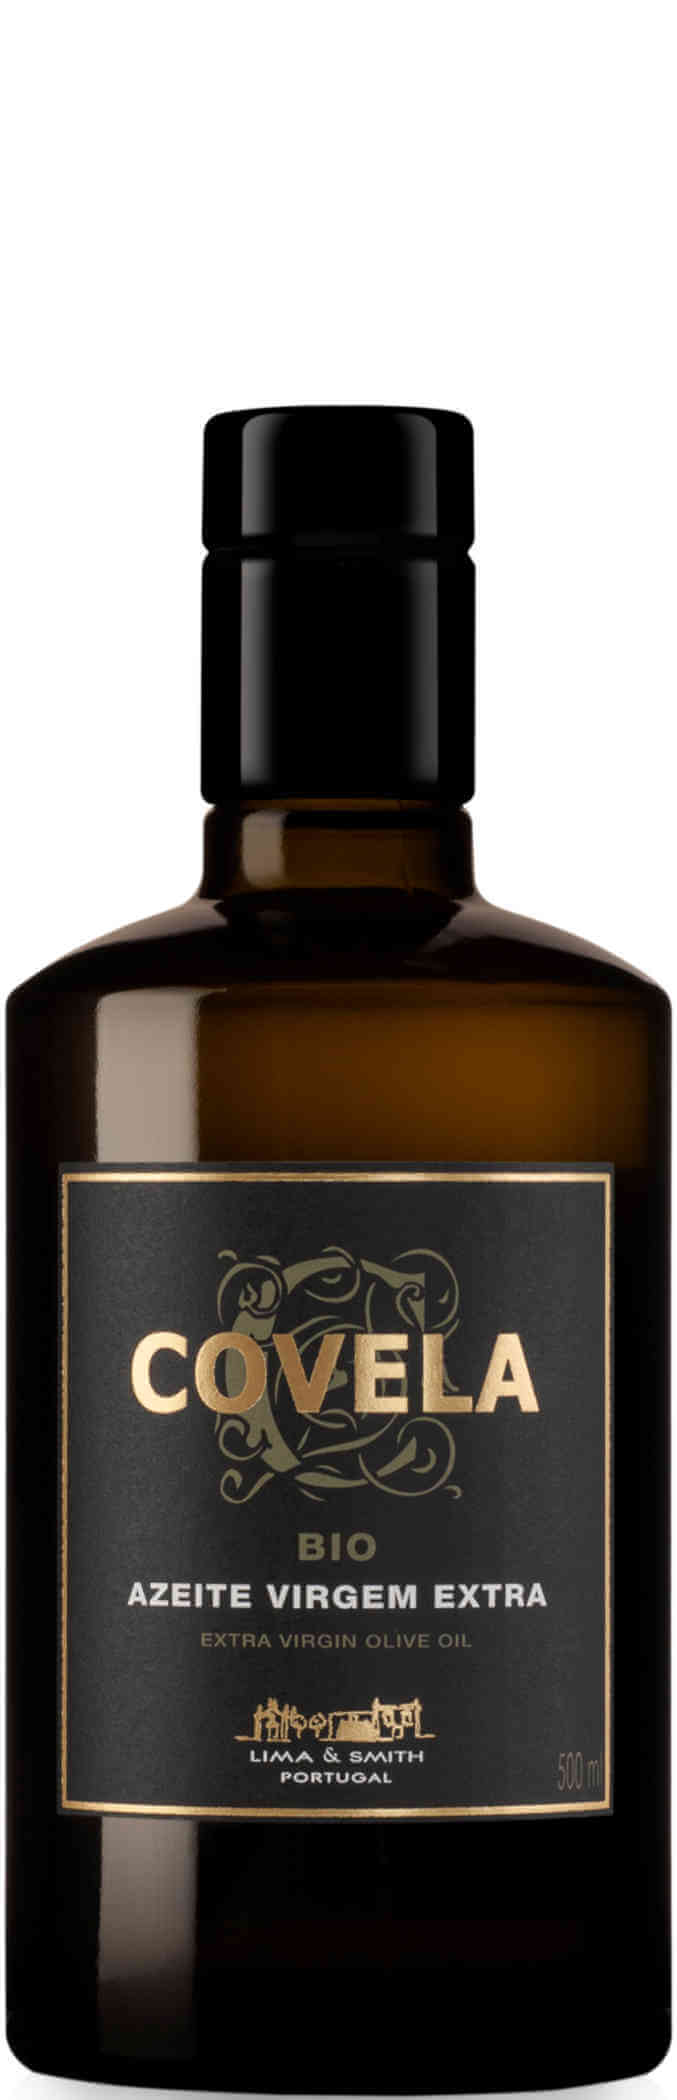 Covela-Azeite